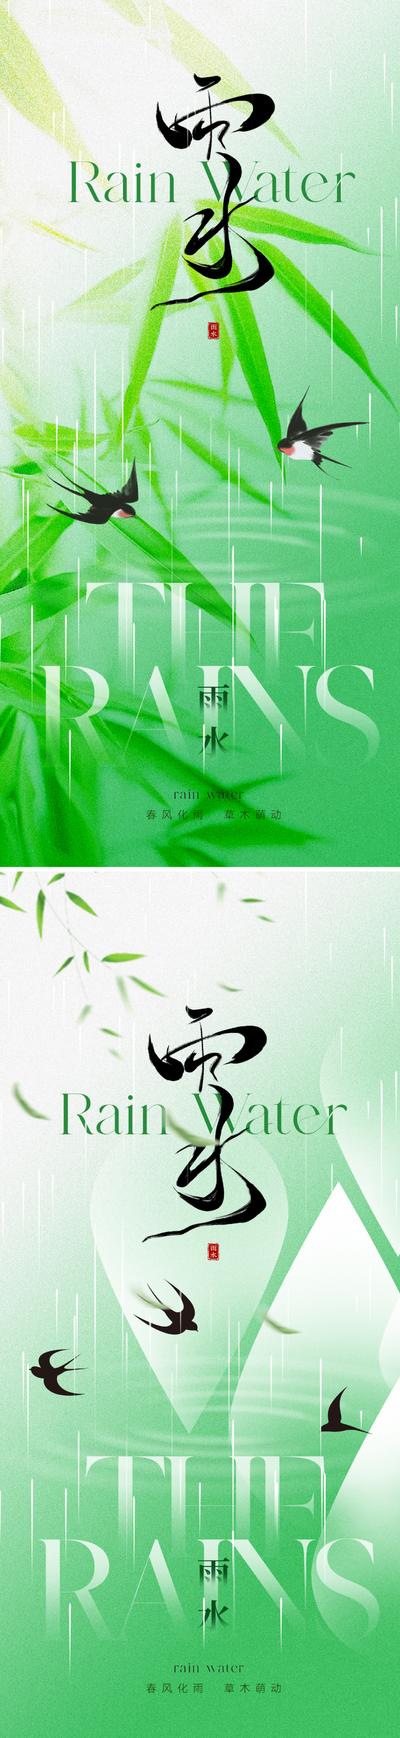 南门网 广告 海报 地产 雨水 节气 中式 中国风 新中式 东方 美学 下雨 燕子 竹叶 水滴 竹子 意境 唯美